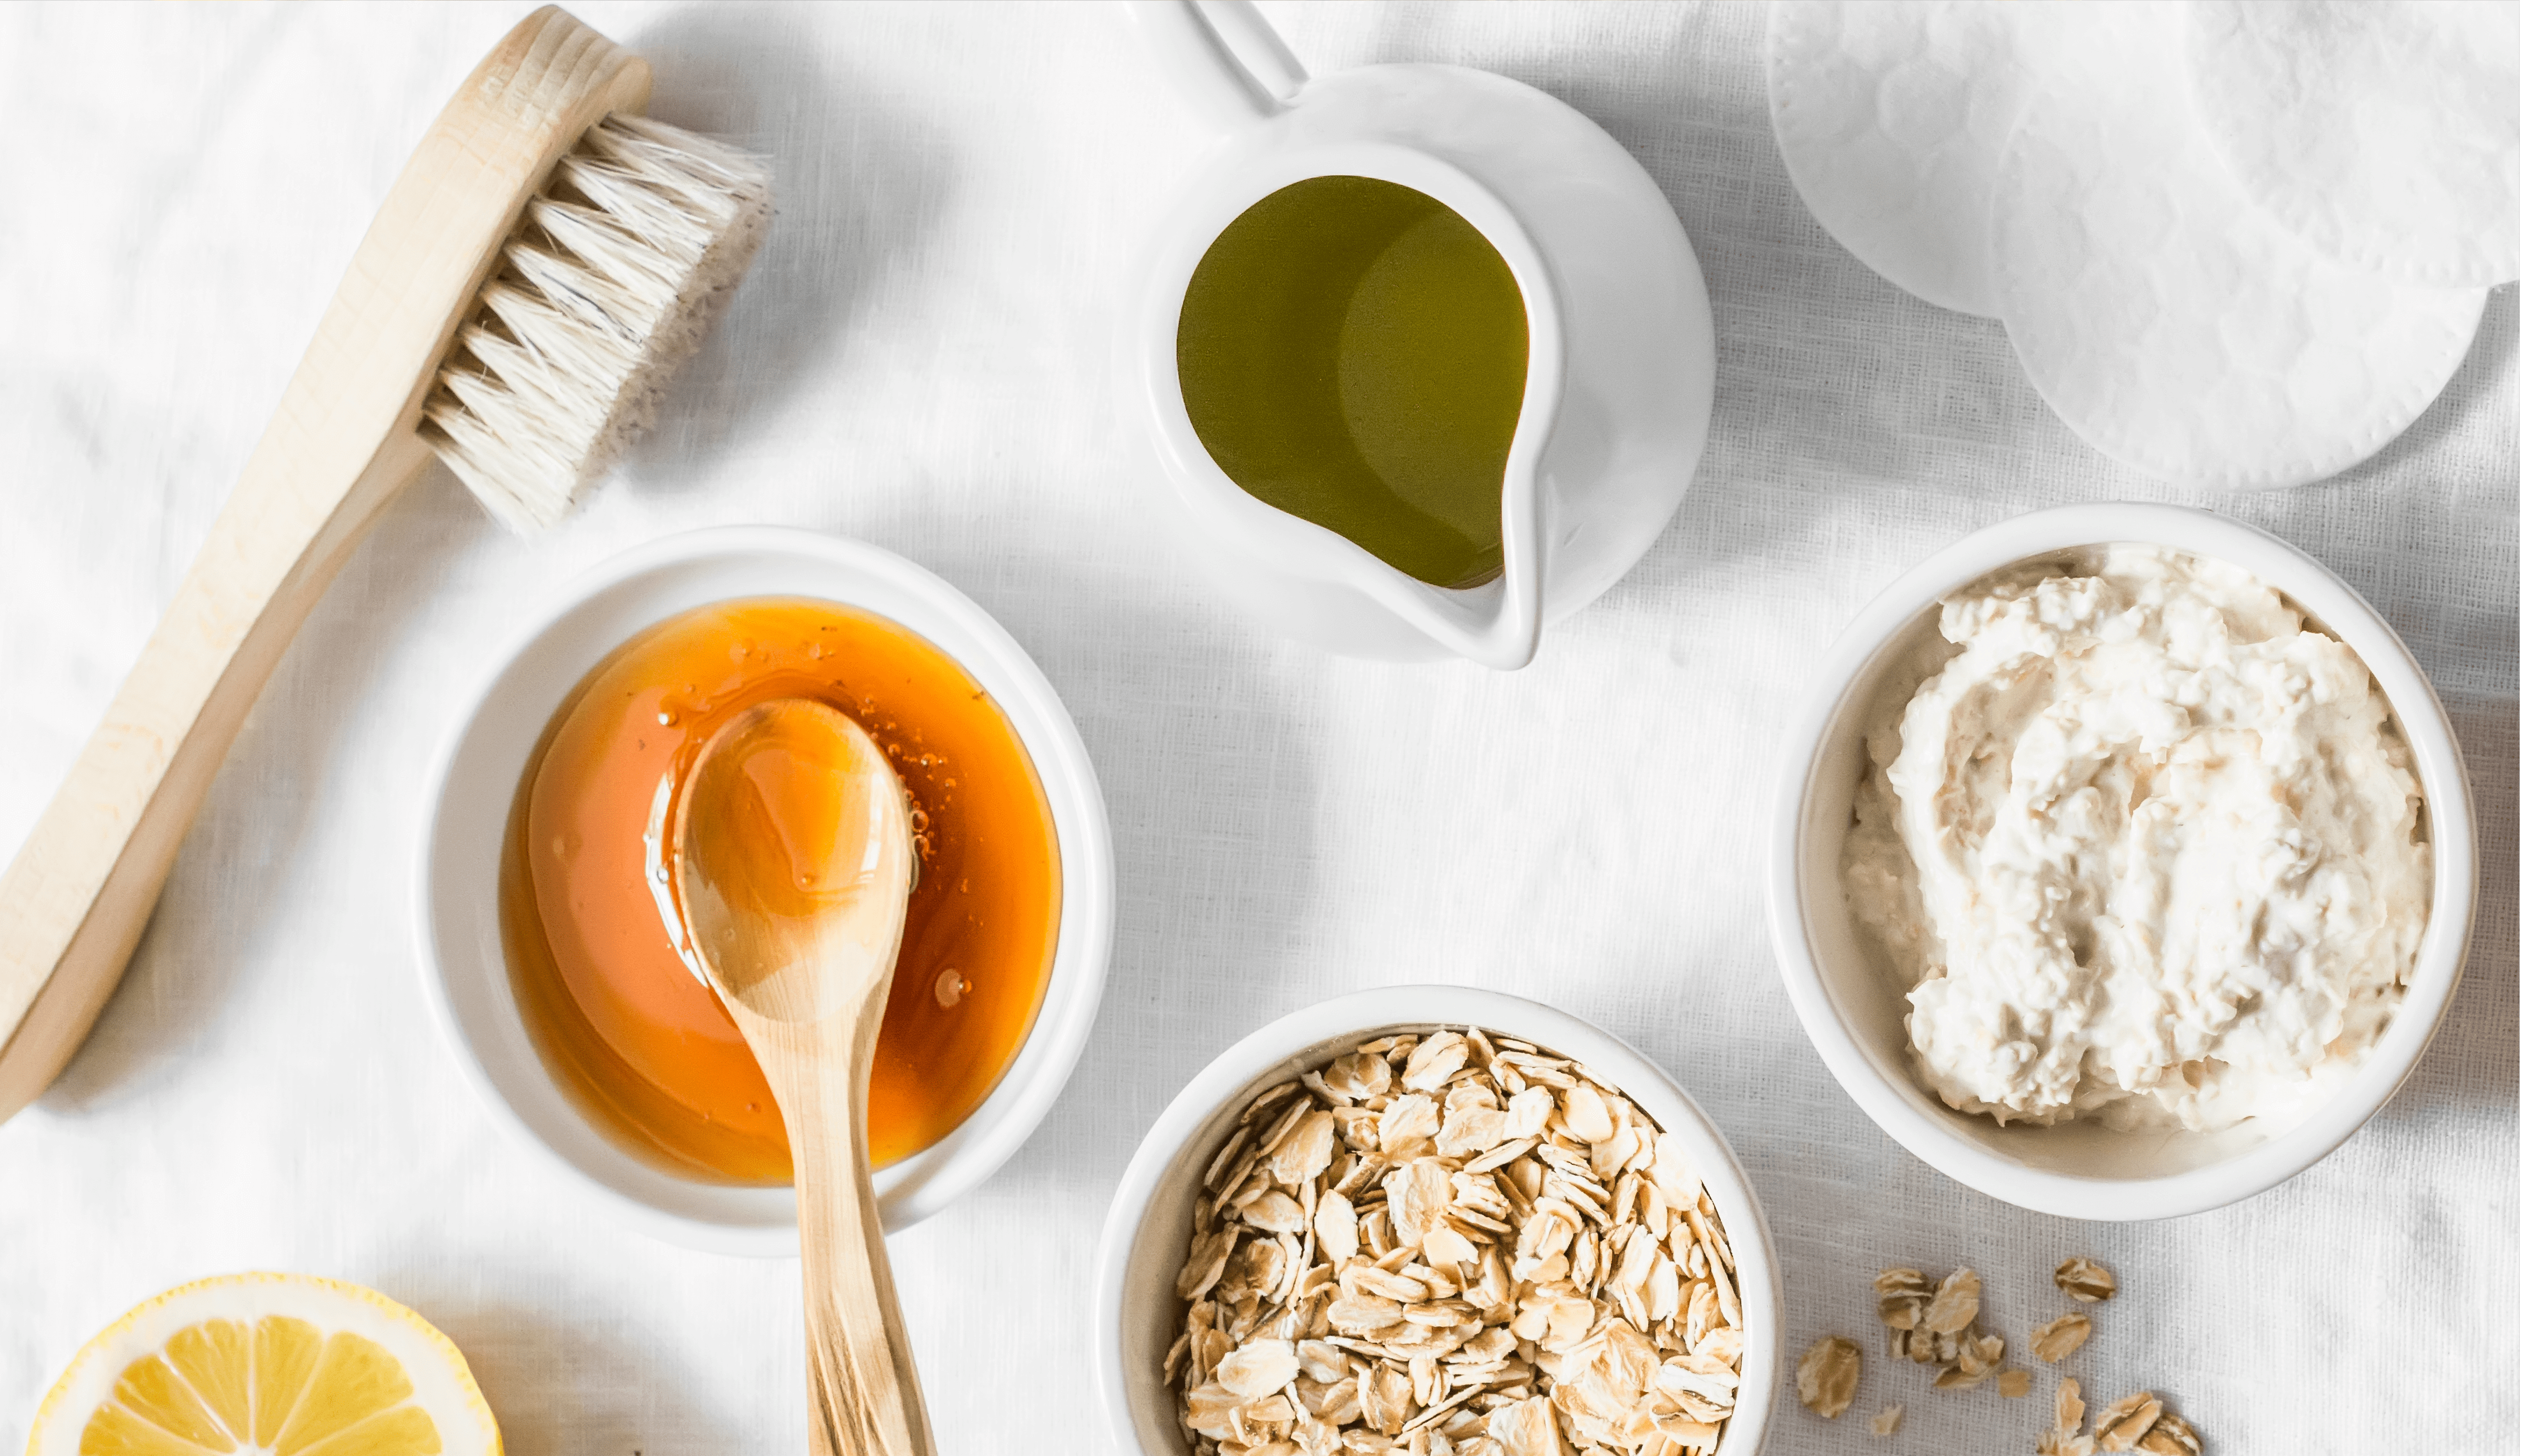 Ingredientes naturais como mel, aveia e limão preparados para receitas sustentáveis e ecológicas utilizando o reaproveitamento de cascas.